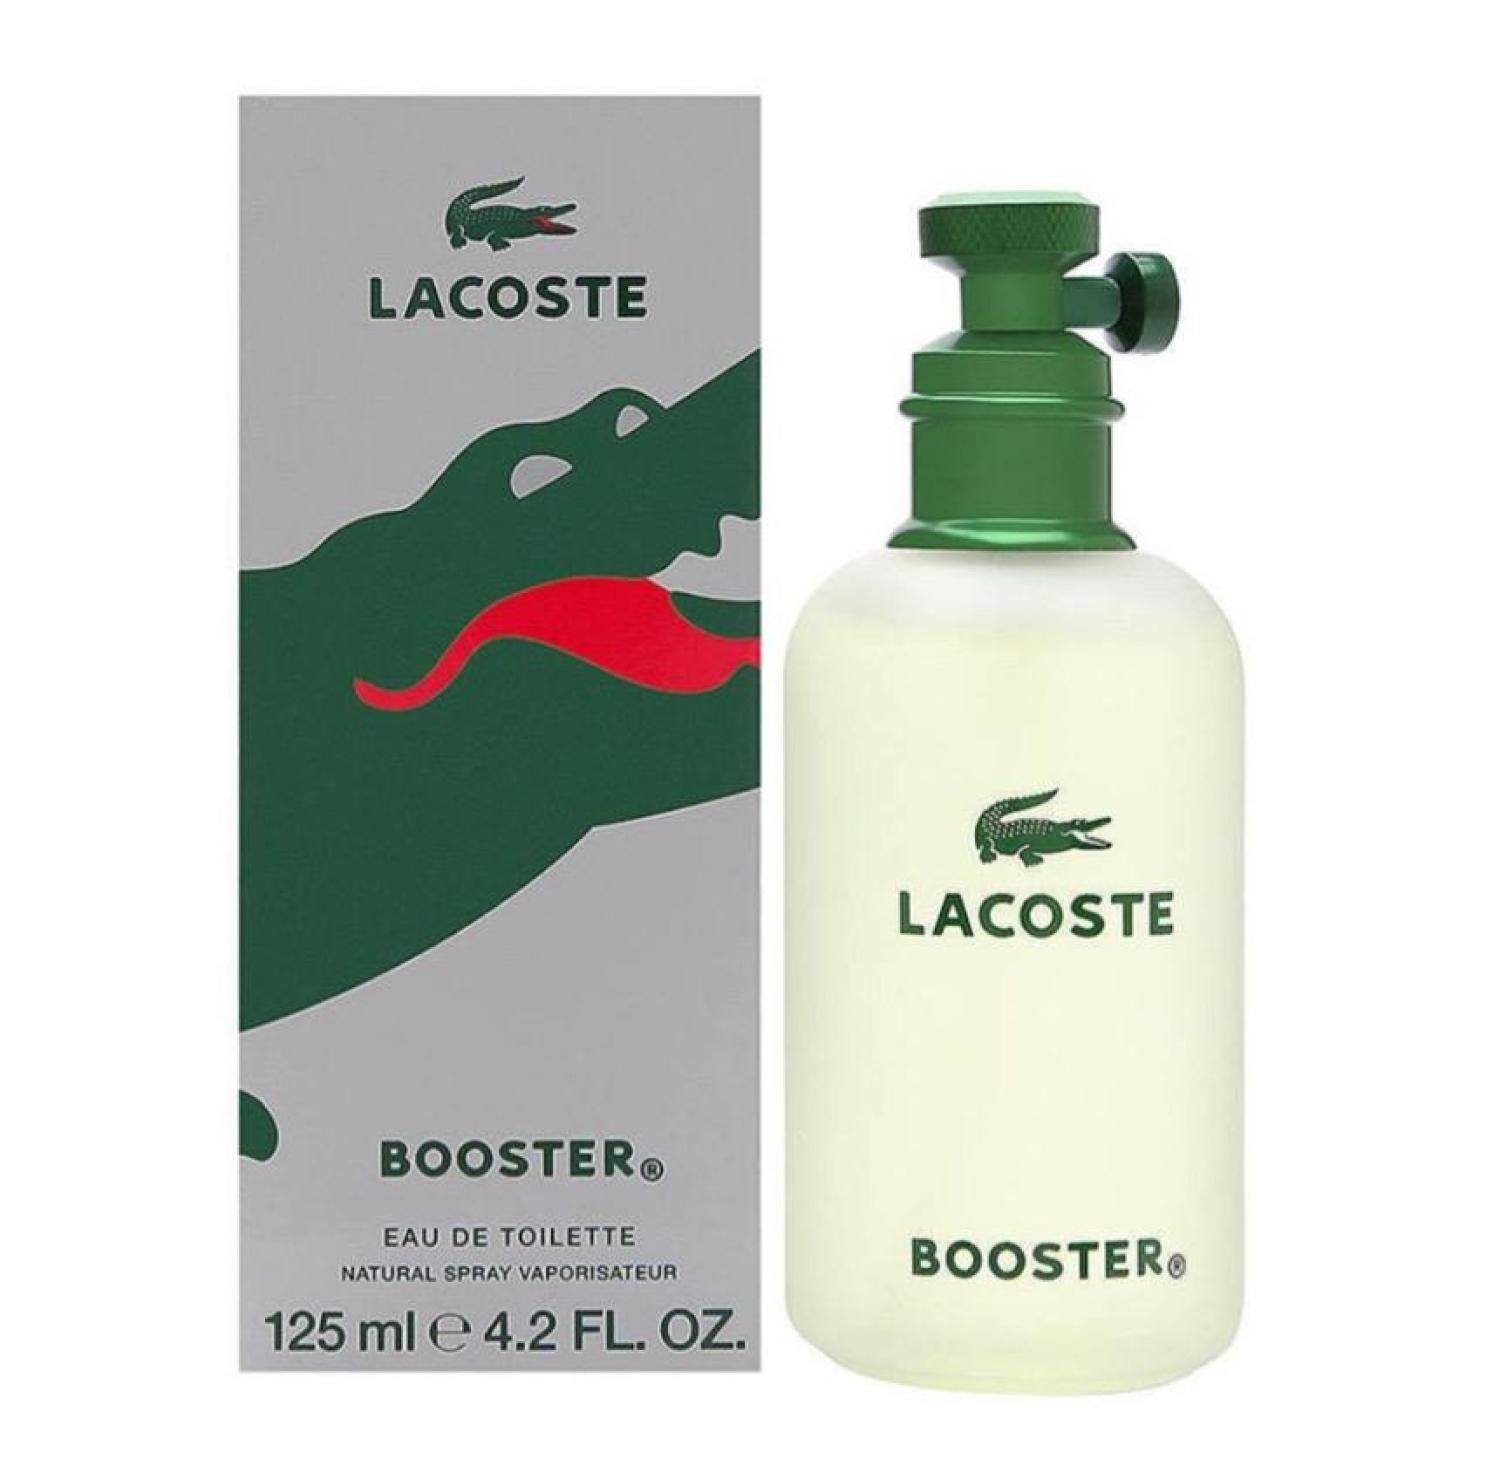 lacoste booster original price